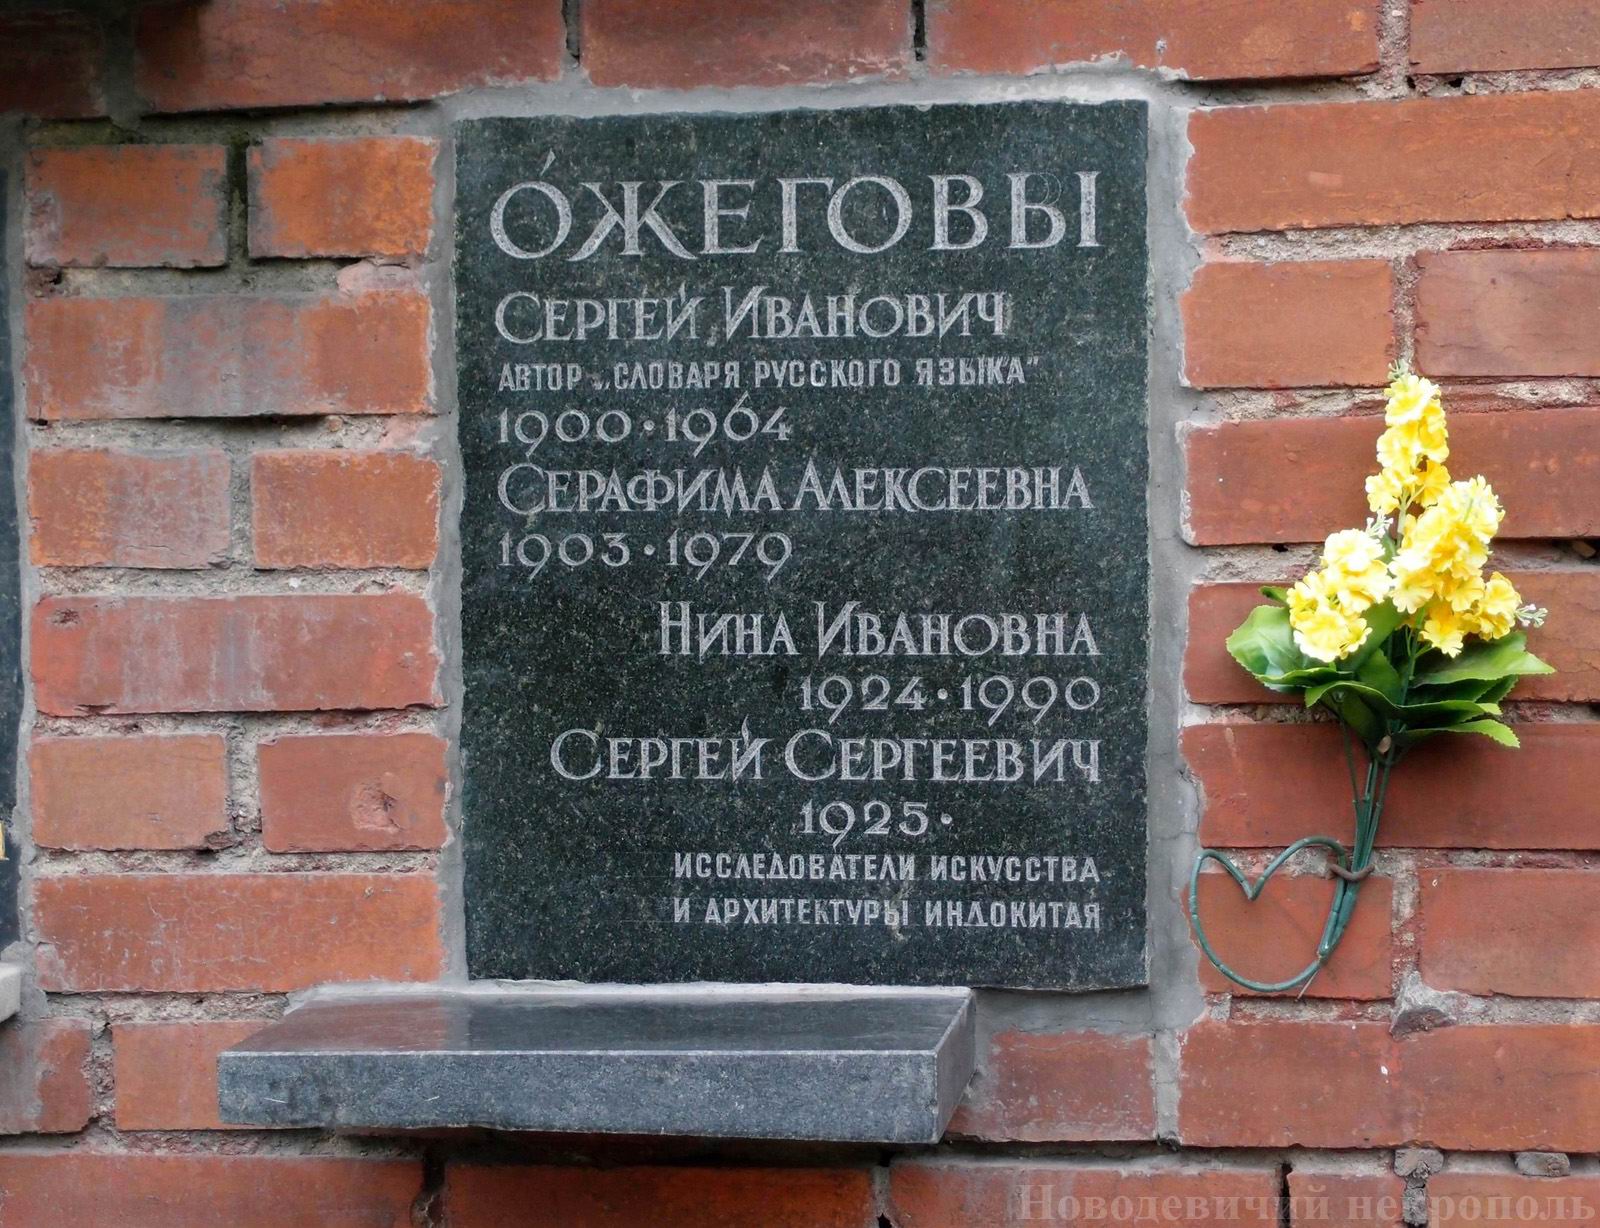 Плита на нише Ожегова С.И. (1900-1964), на Новодевичьем кладбище (колумбарий [127]-27-3).